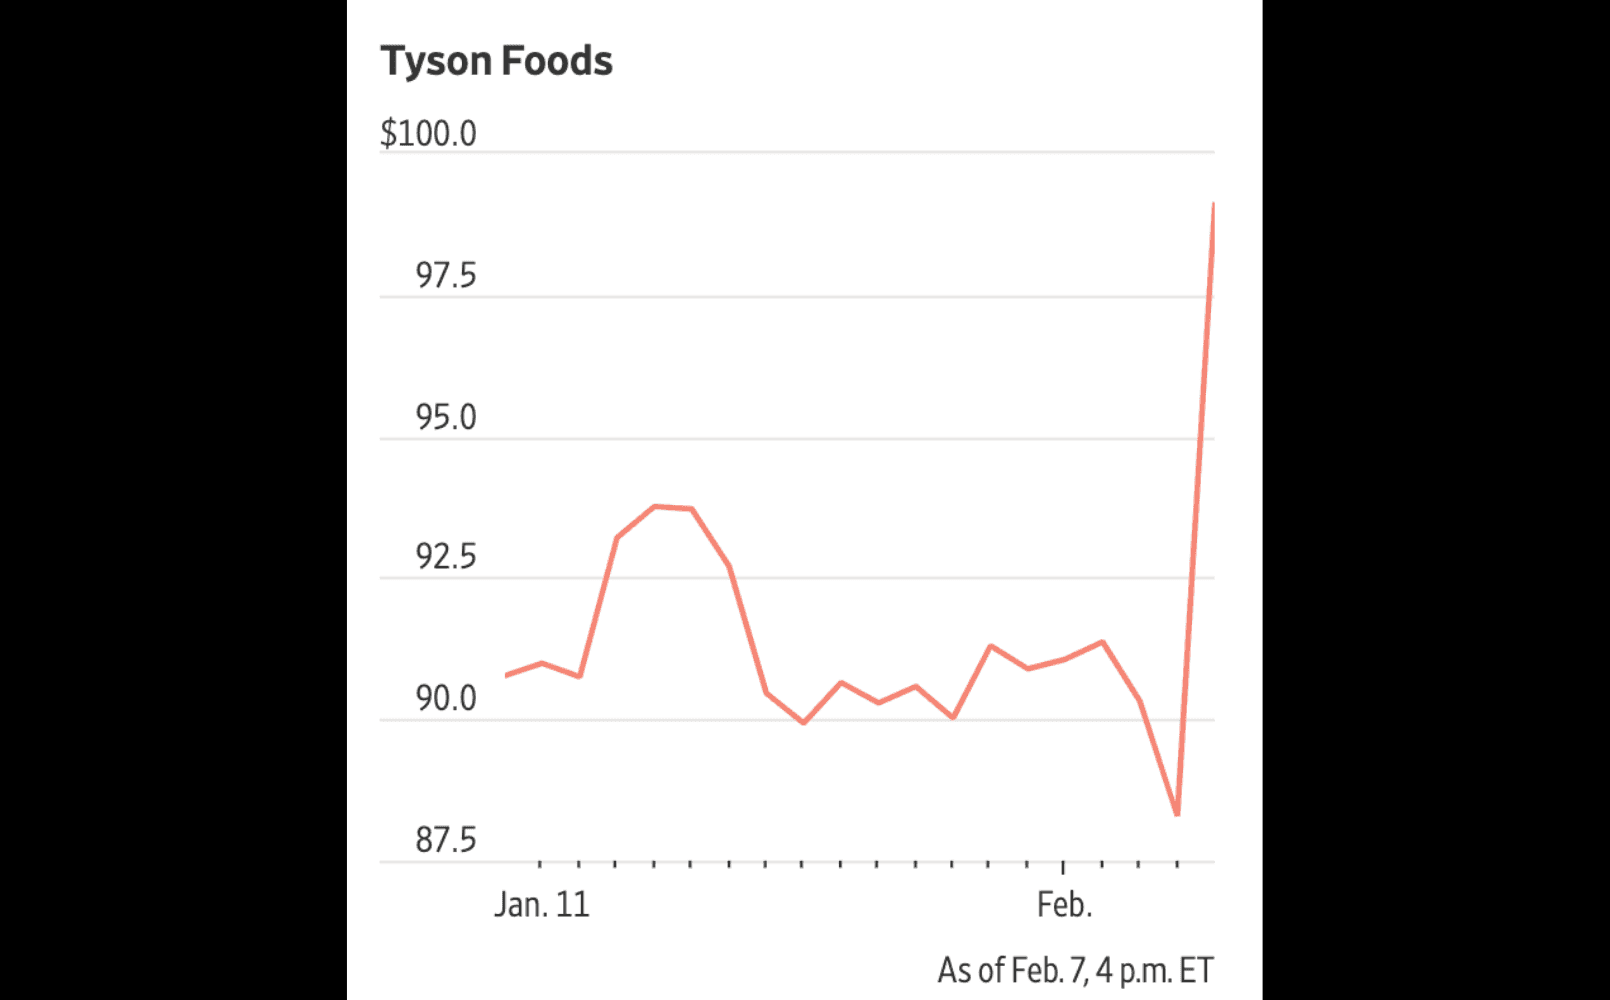 Tyson Foods stock